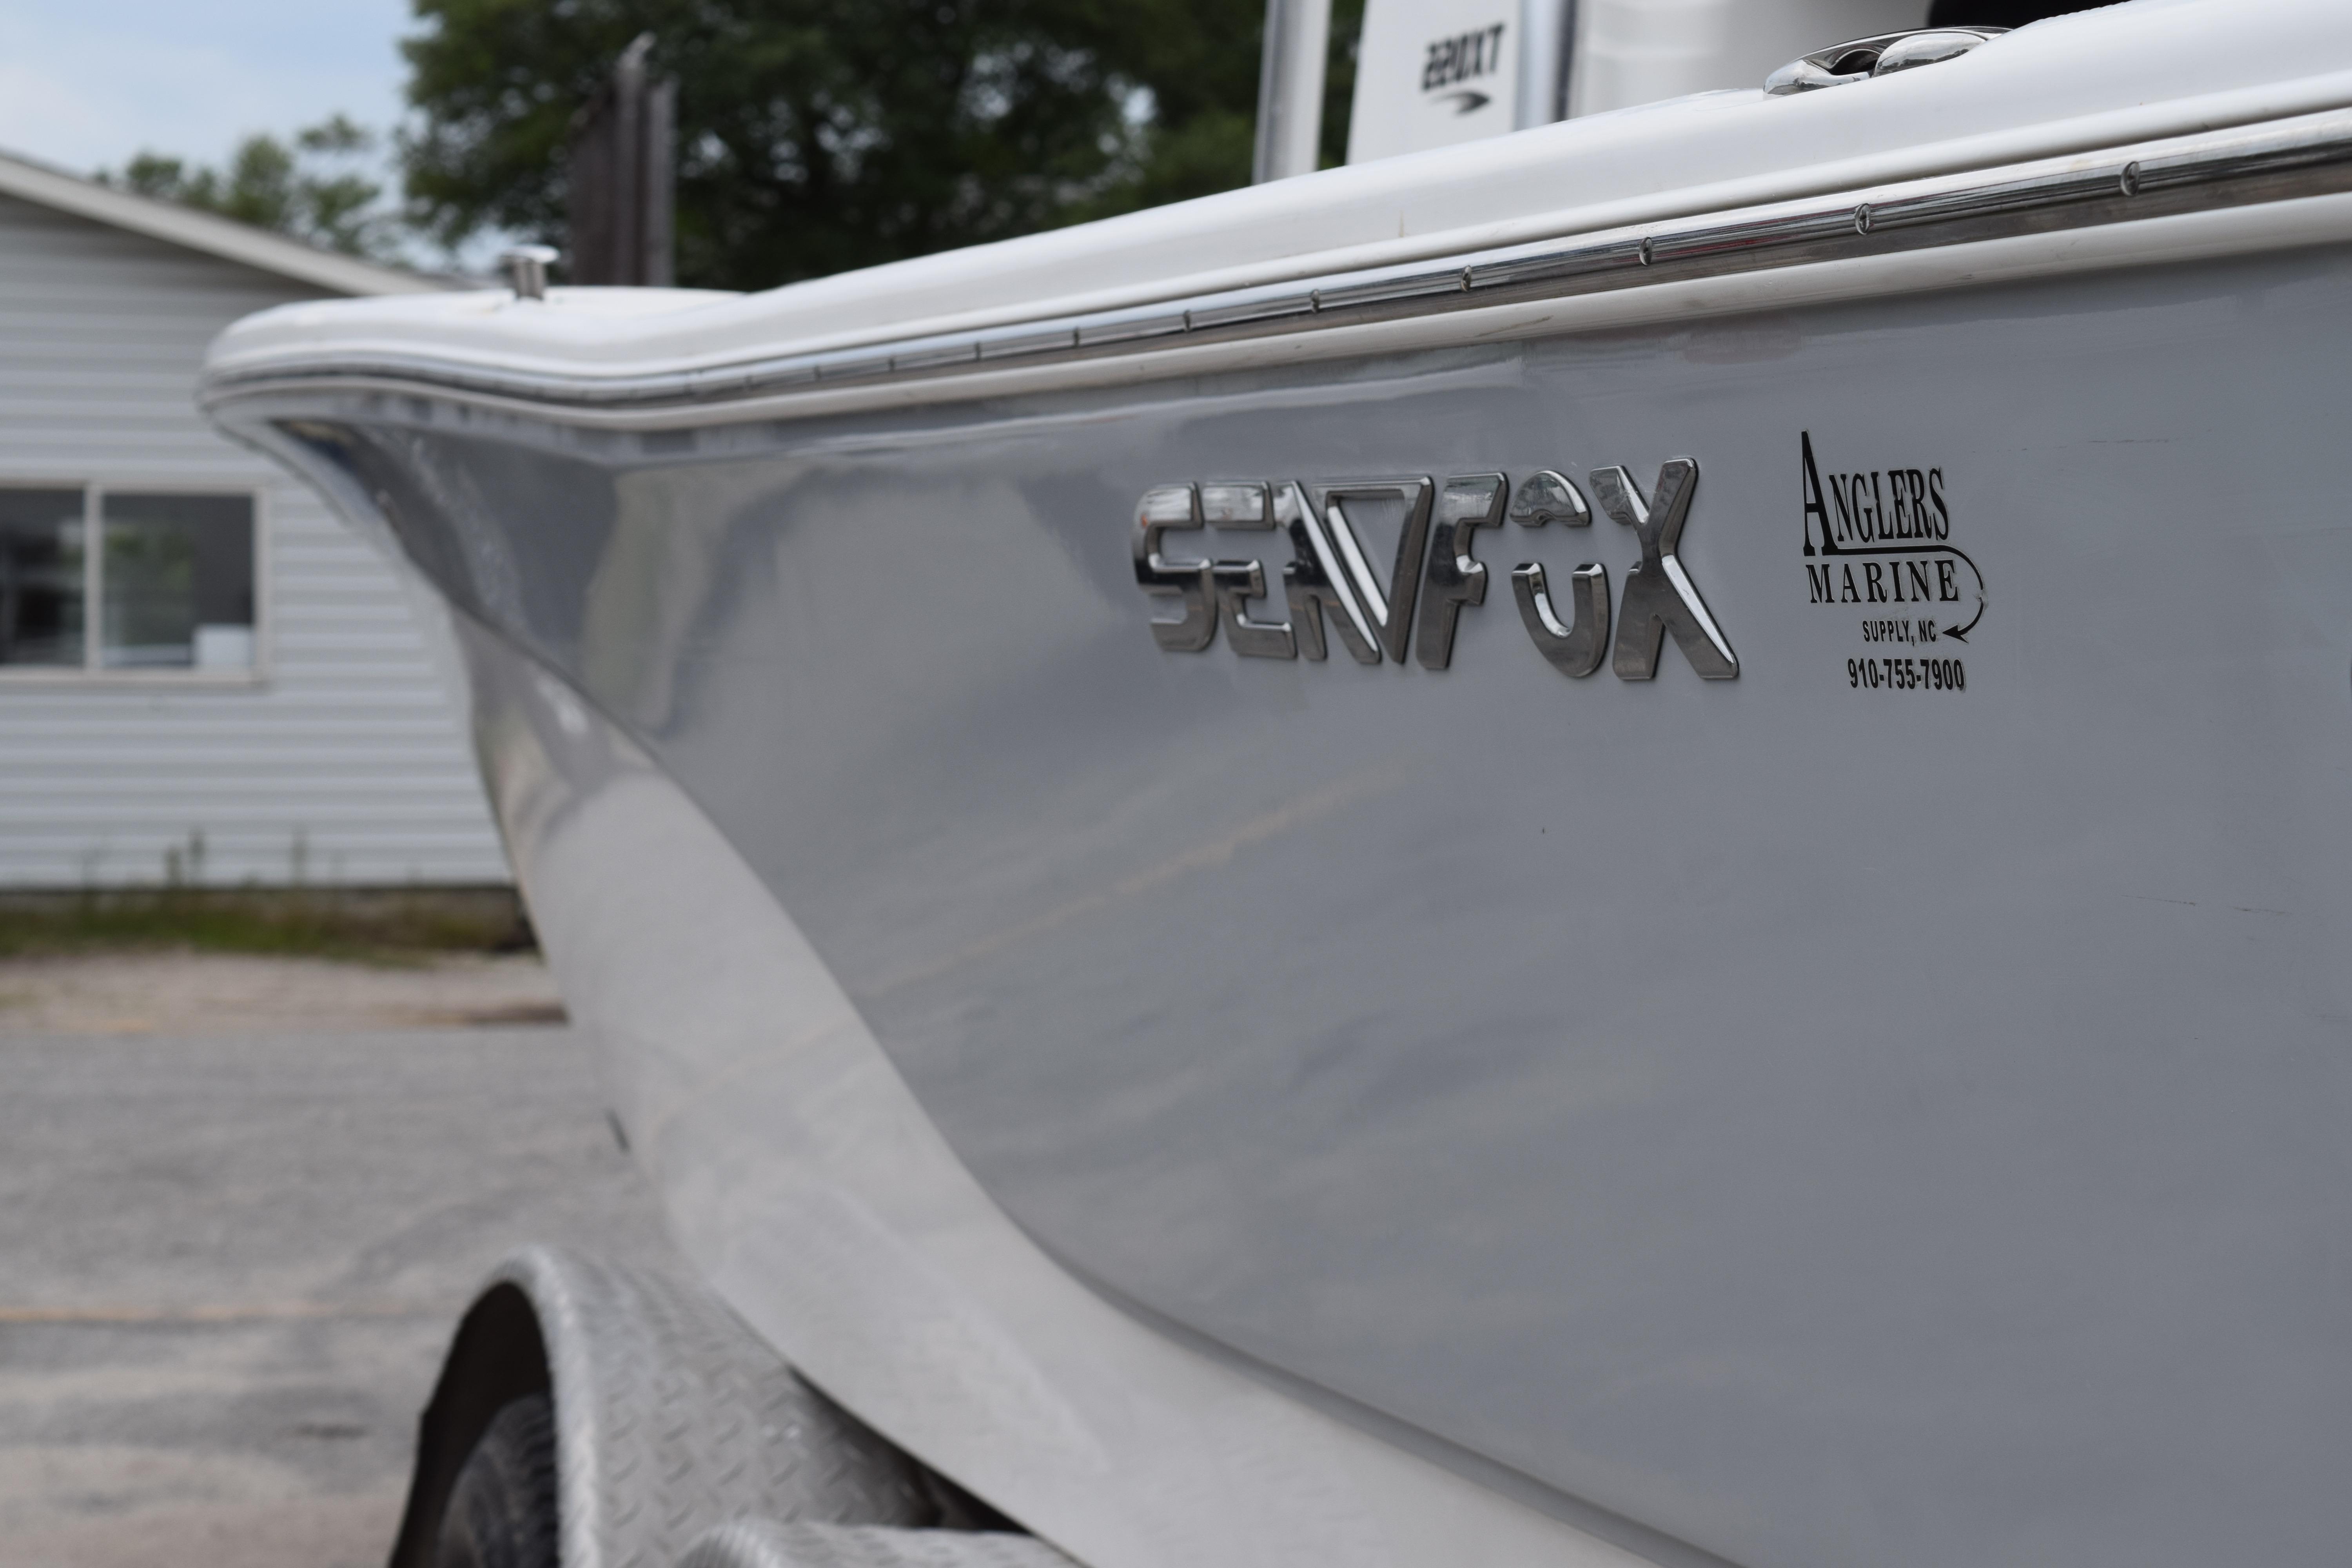 2013 Sea Fox 220XT Pro Series